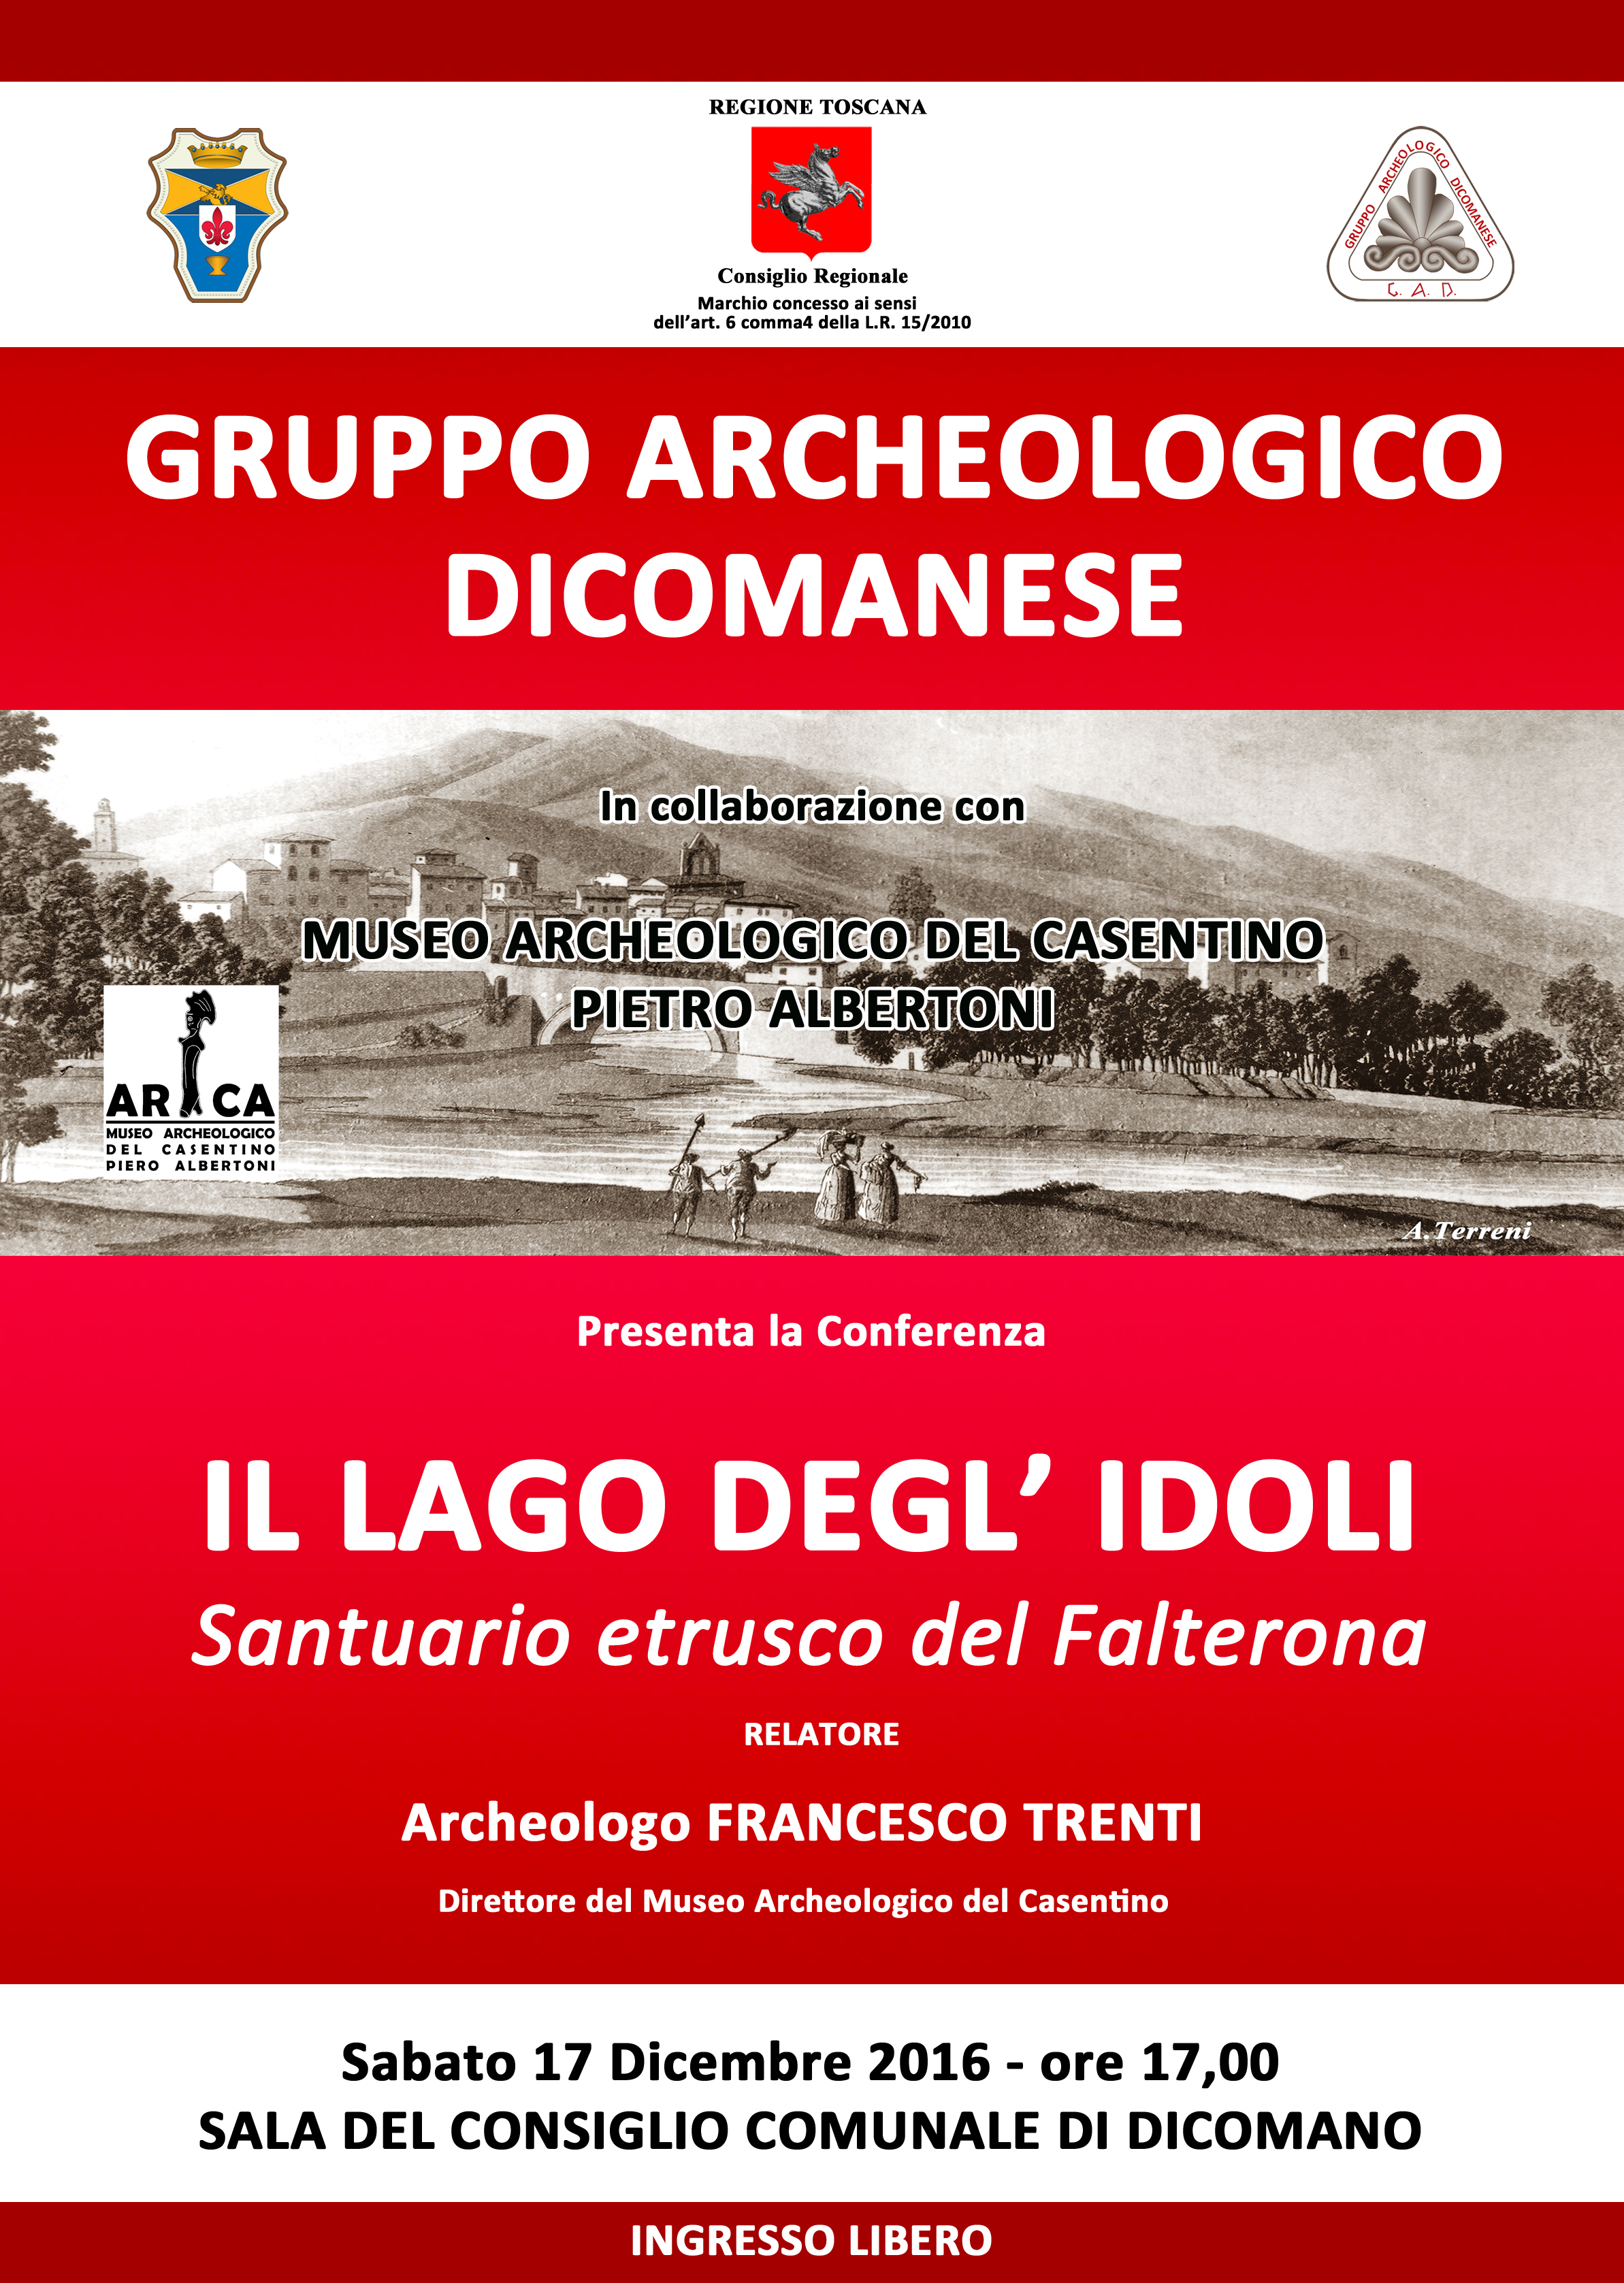 “Il Lago degl’Idoli”. Conferenza sabato 17 a Dicomano sul famoso sito archeologico.